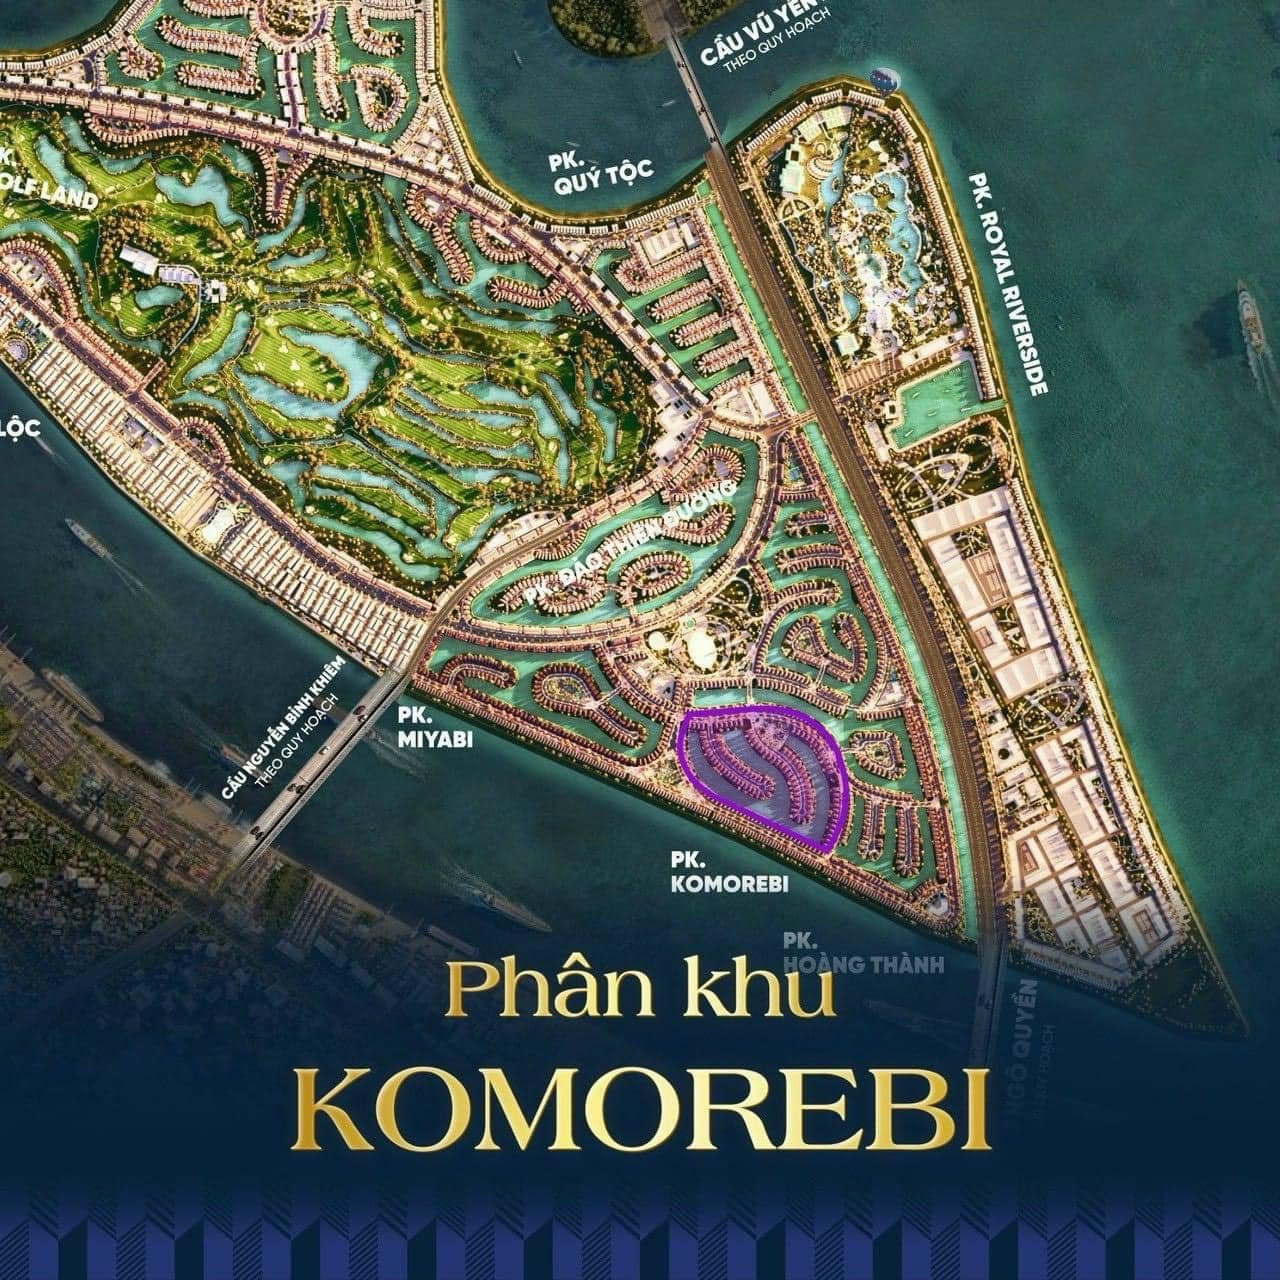 Phân khu Komorebi - Vinhomes Vũ Yên, Hải Phòng